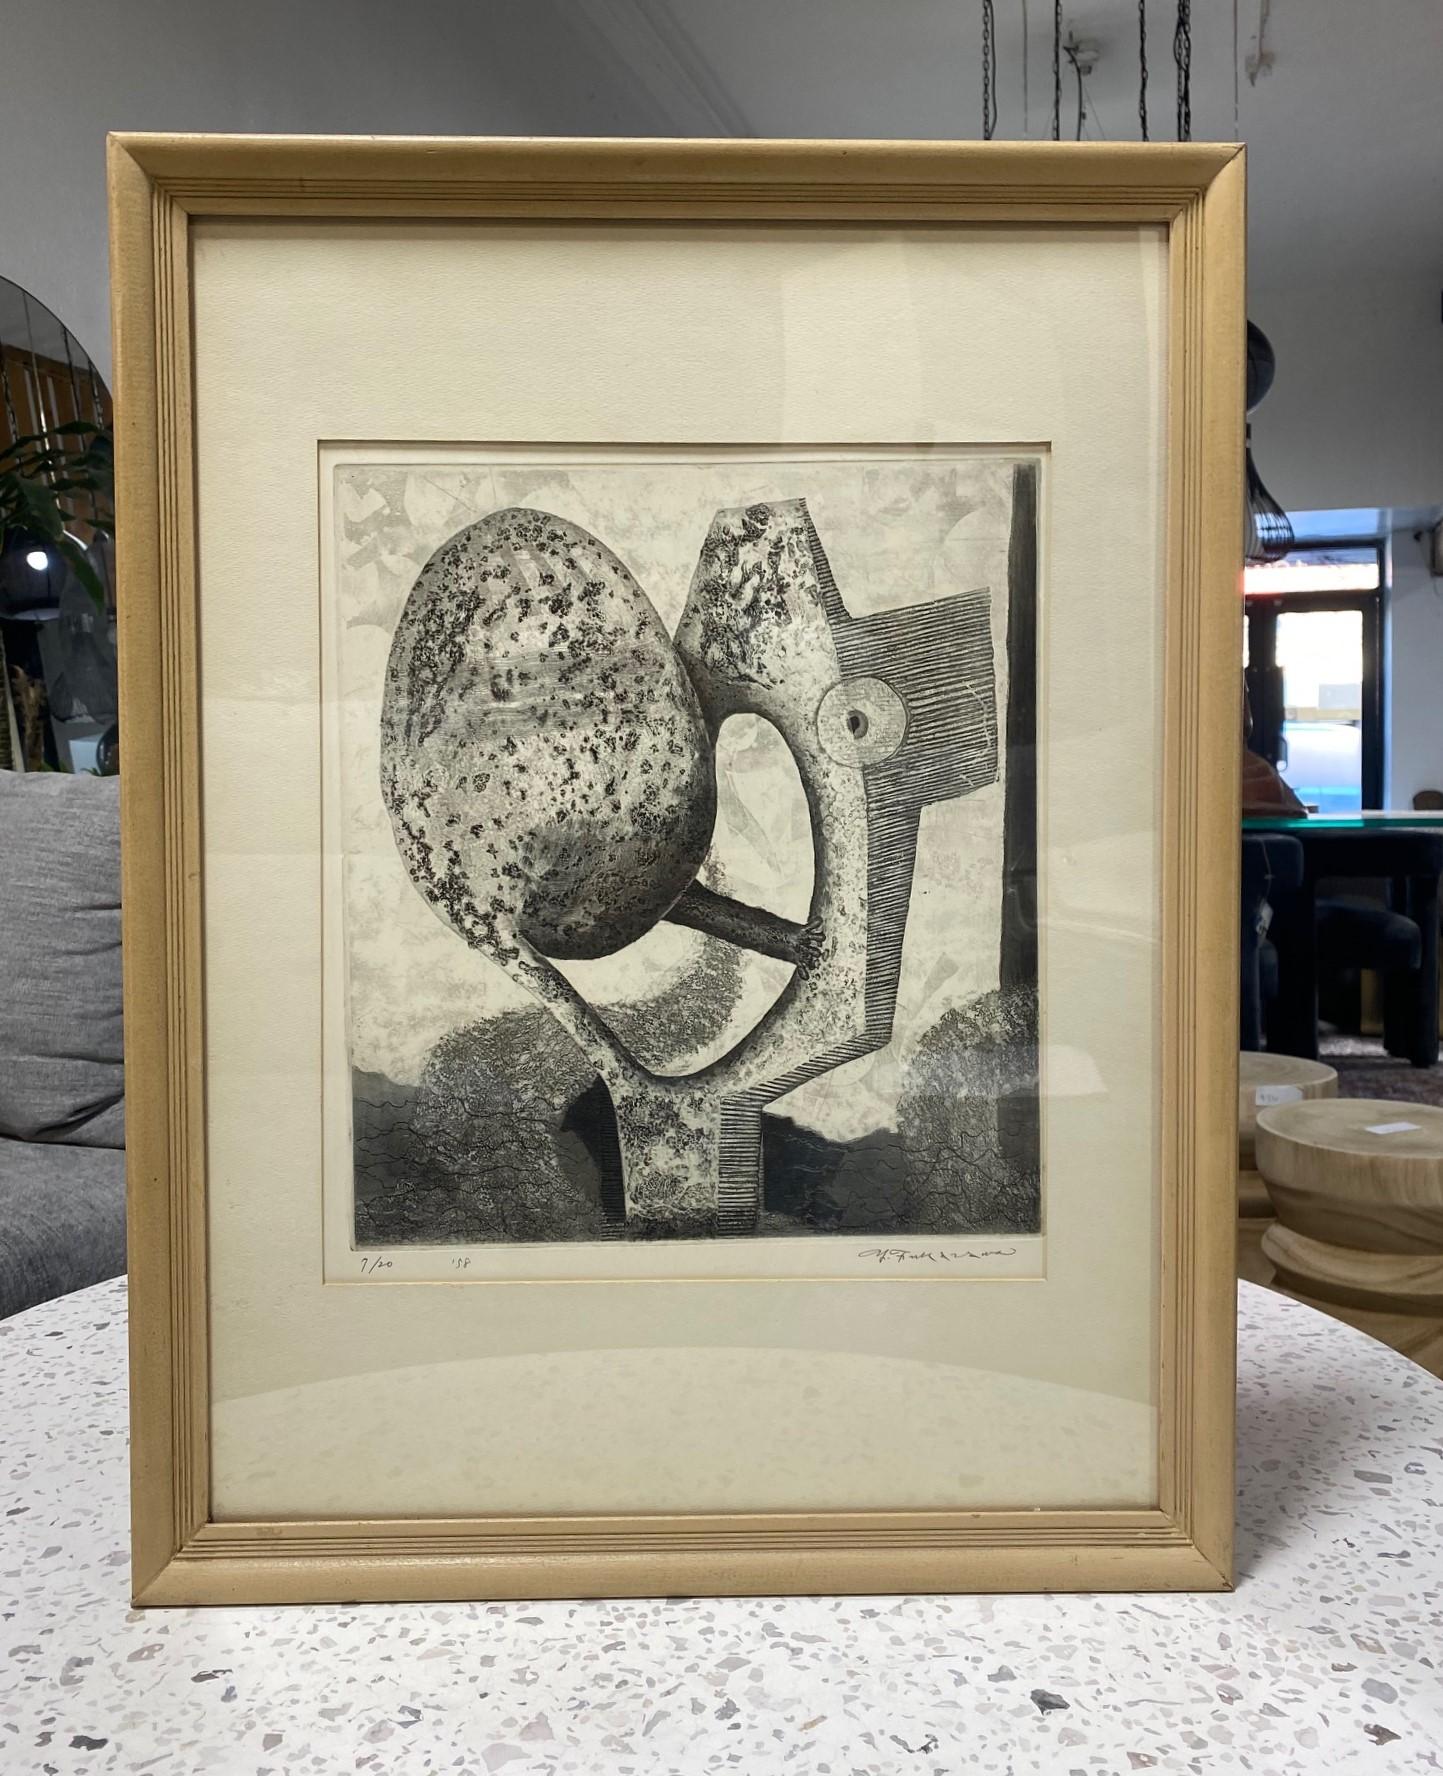 Ein wahrhaft wundervolles und unterschwellig seltsames abstraktes Werk des japanischen Künstlers Yukio Fukazawa aus der Mitte des Jahrhunderts. (1924-).  

Die Aquatintaradierung ist vom Künstler am unteren Rand mit Bleistift signiert, datiert